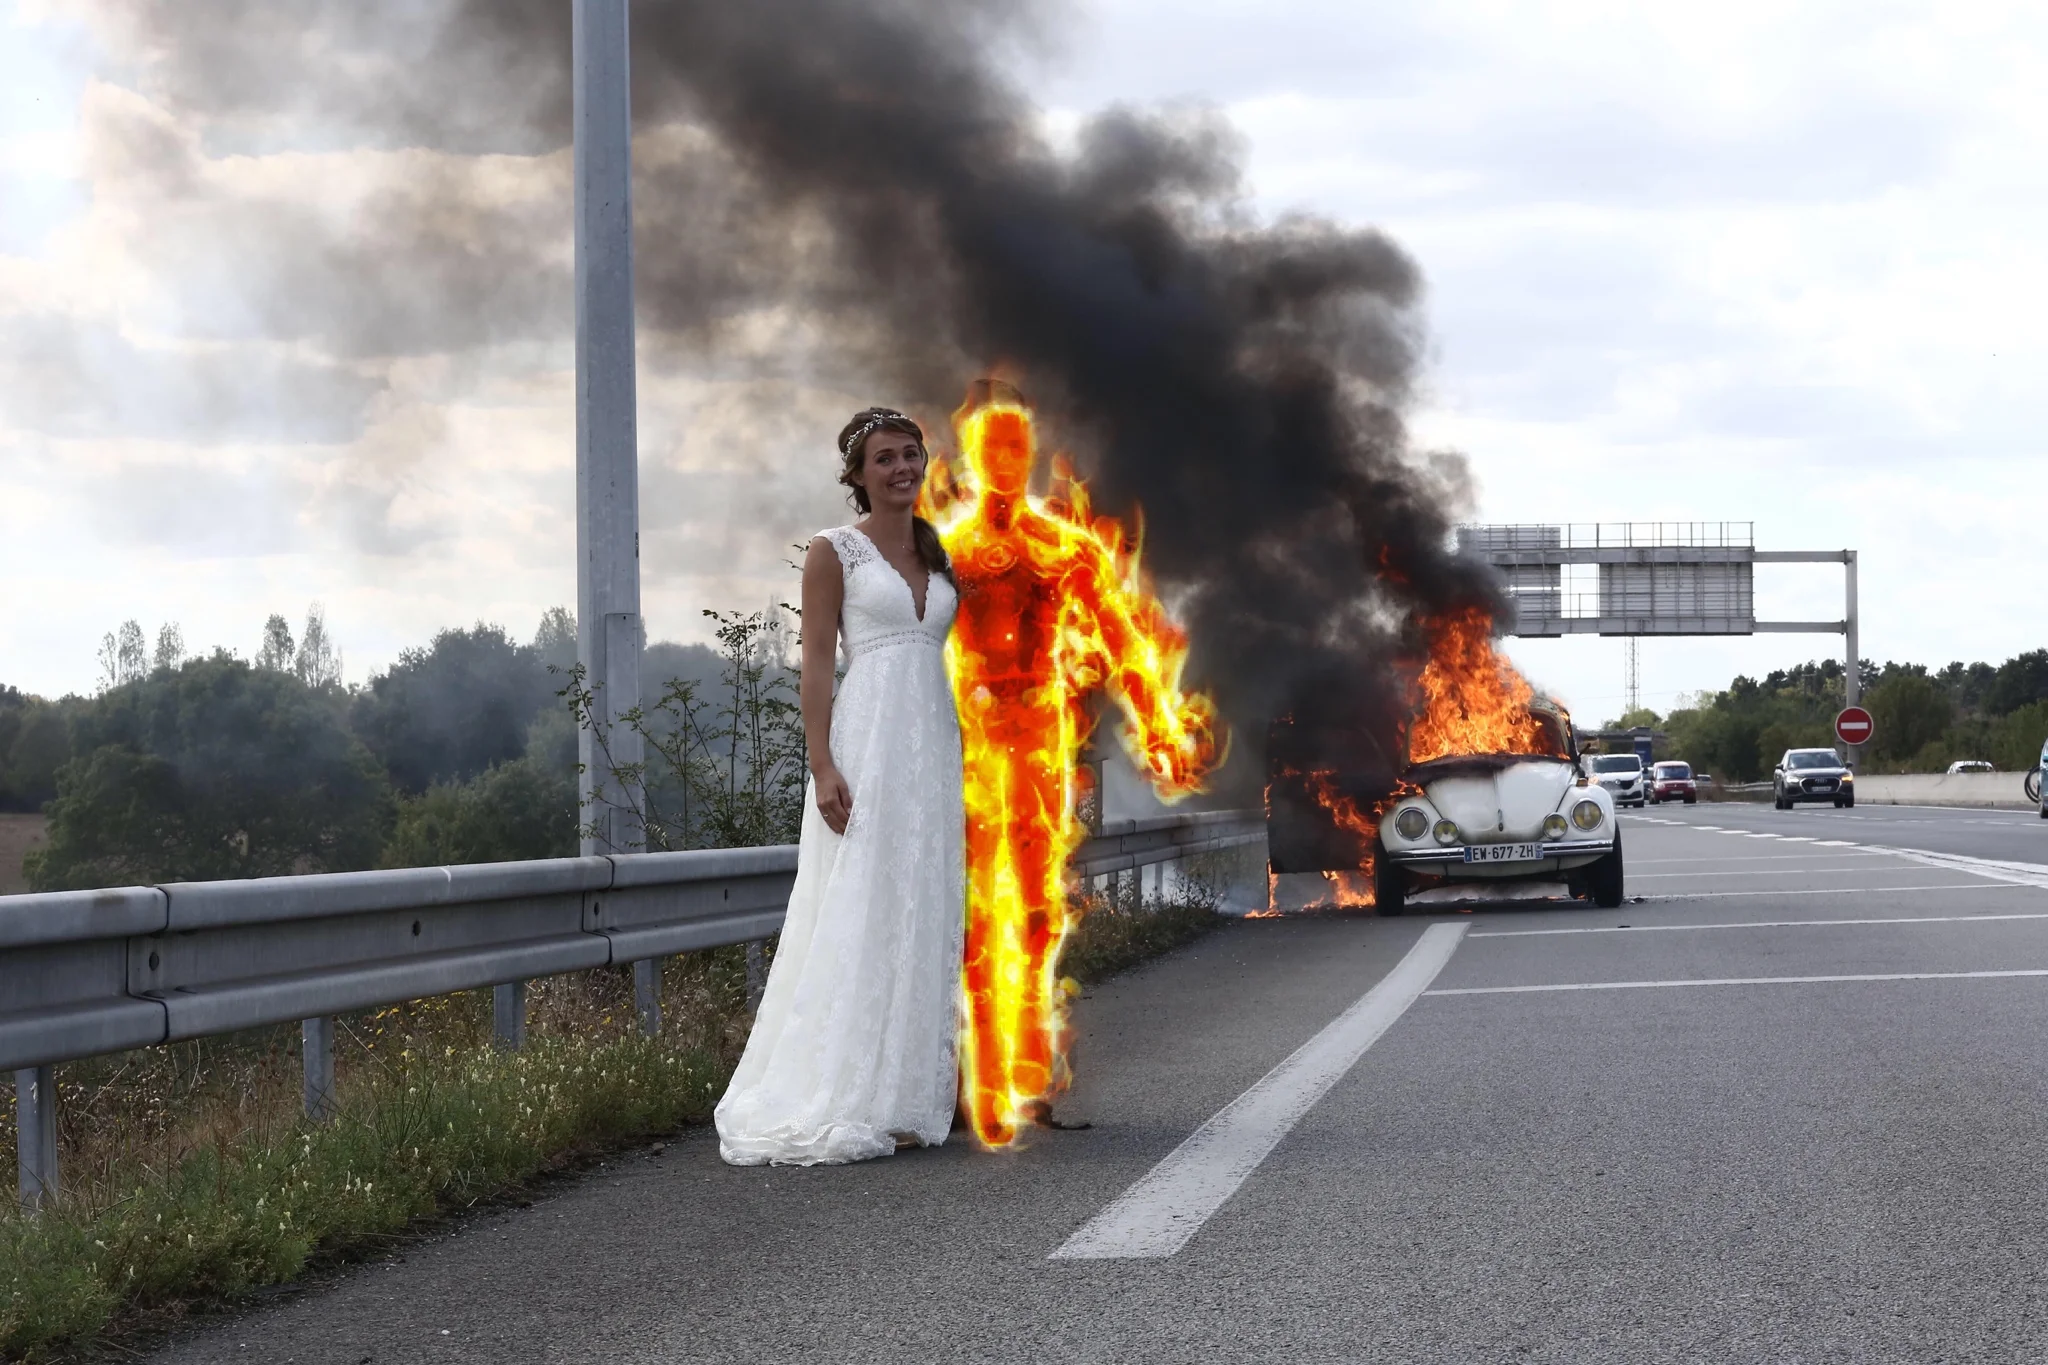 Молодята зробили весільне фото на фоні палаючого авто і стали жертвами фотошопу - фото 452774